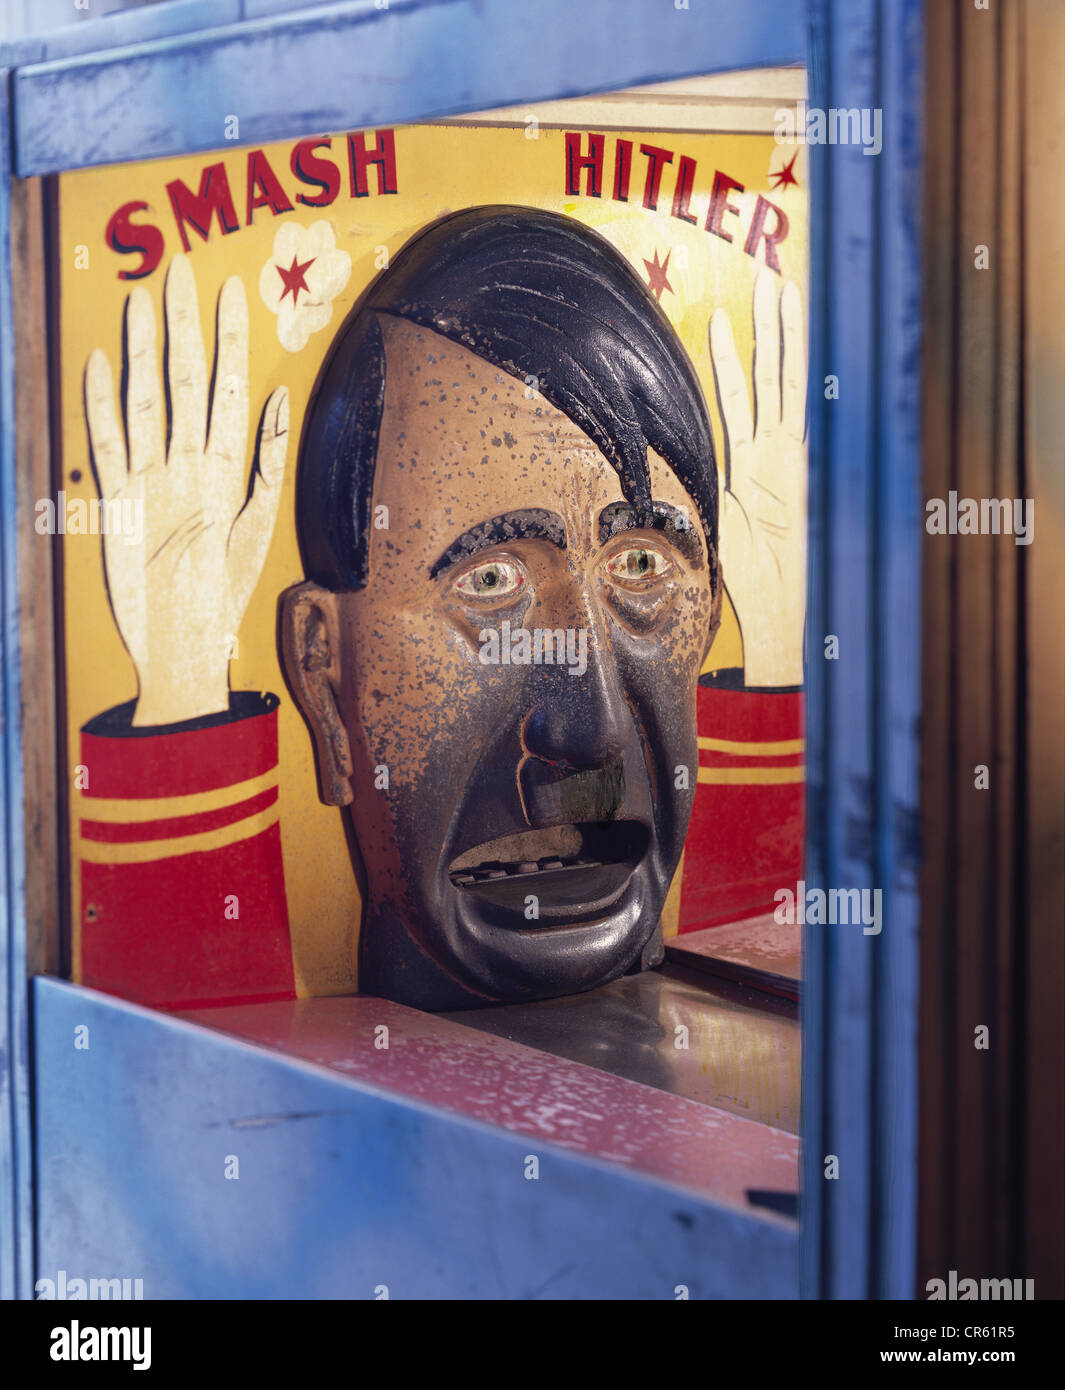 Hitler, Adolf, 20.4.1889 - 30.4.1945, deutscher Politiker (NSDAP), Reichskanzler, Figur eines Toss-Spiels "Hitler mash", Mitte des 20. Jahrhunderts, Stockfoto